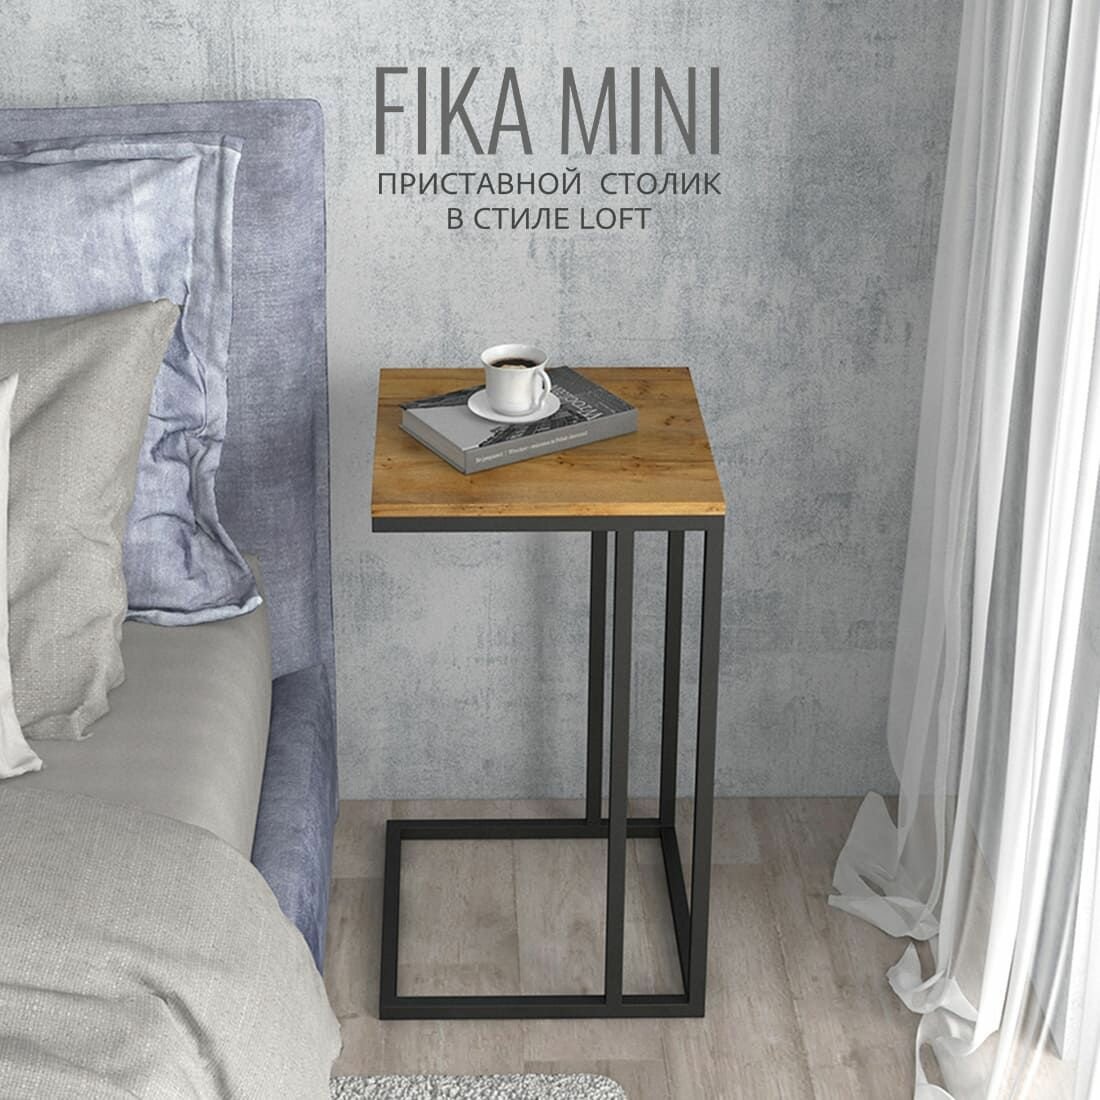 Журнальный столик FIKA mini, 40х40х69 см, коричневый, приставной столик для ноутбука, гростат